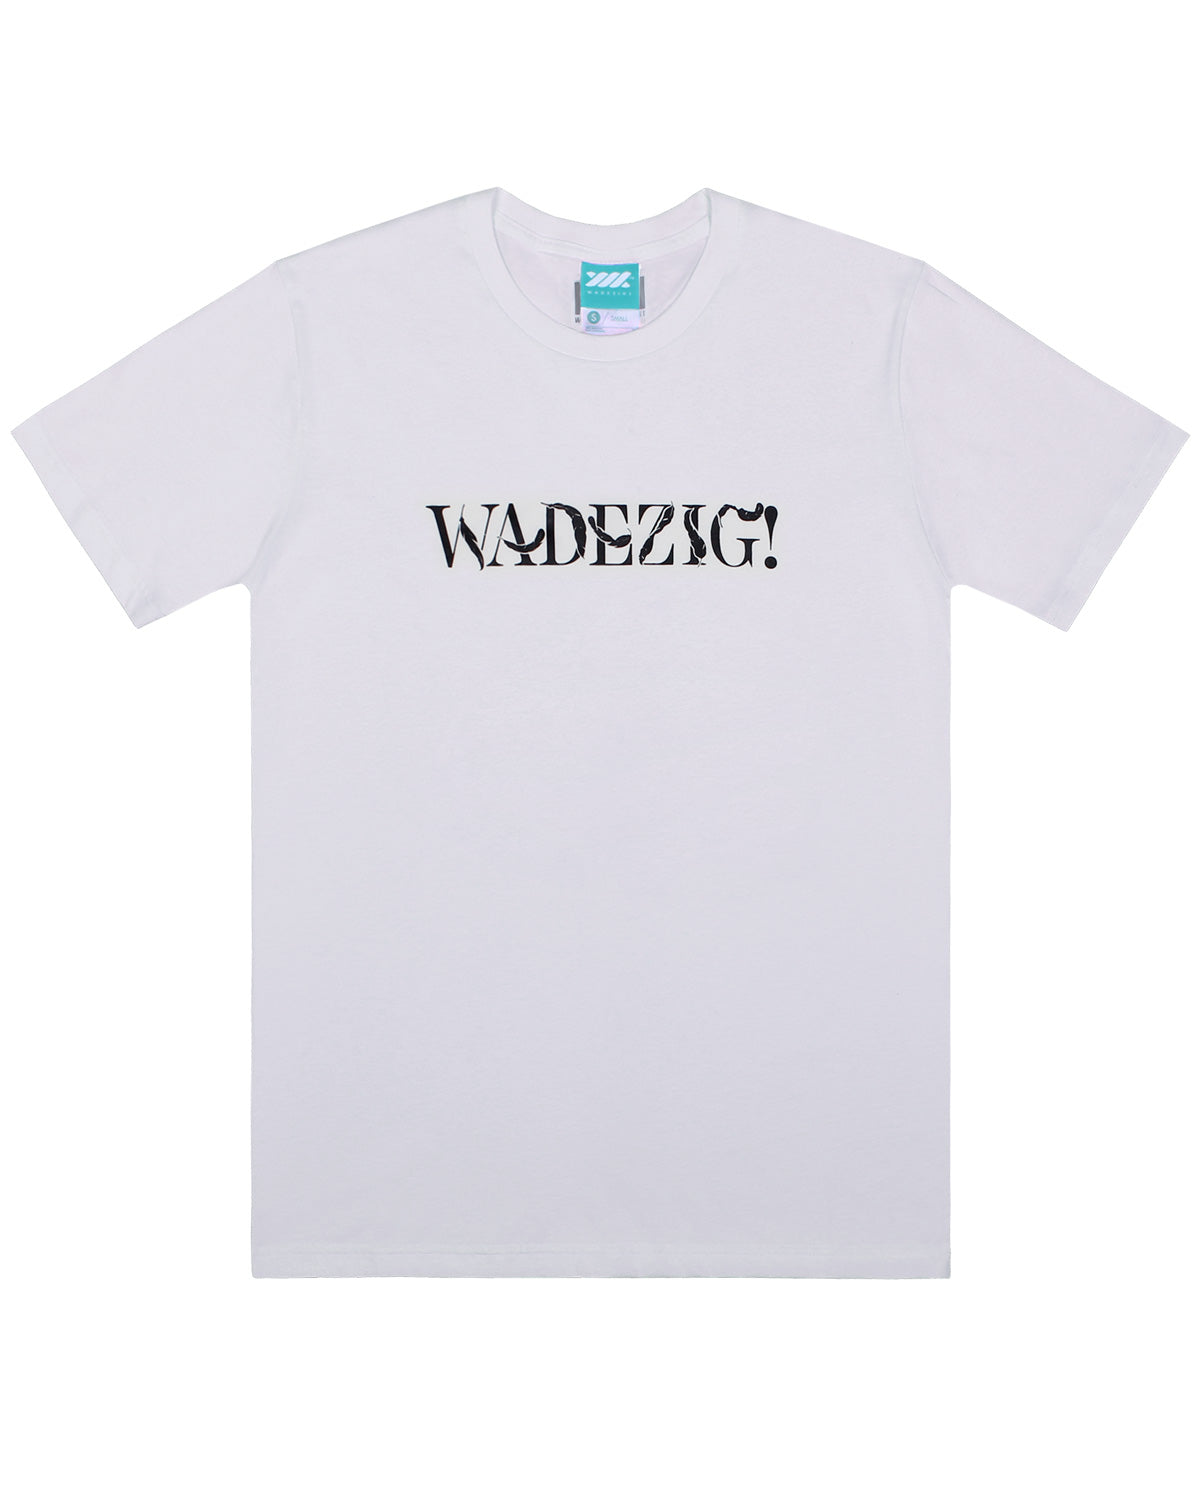 Wadezig! T-Shirt - Swan White